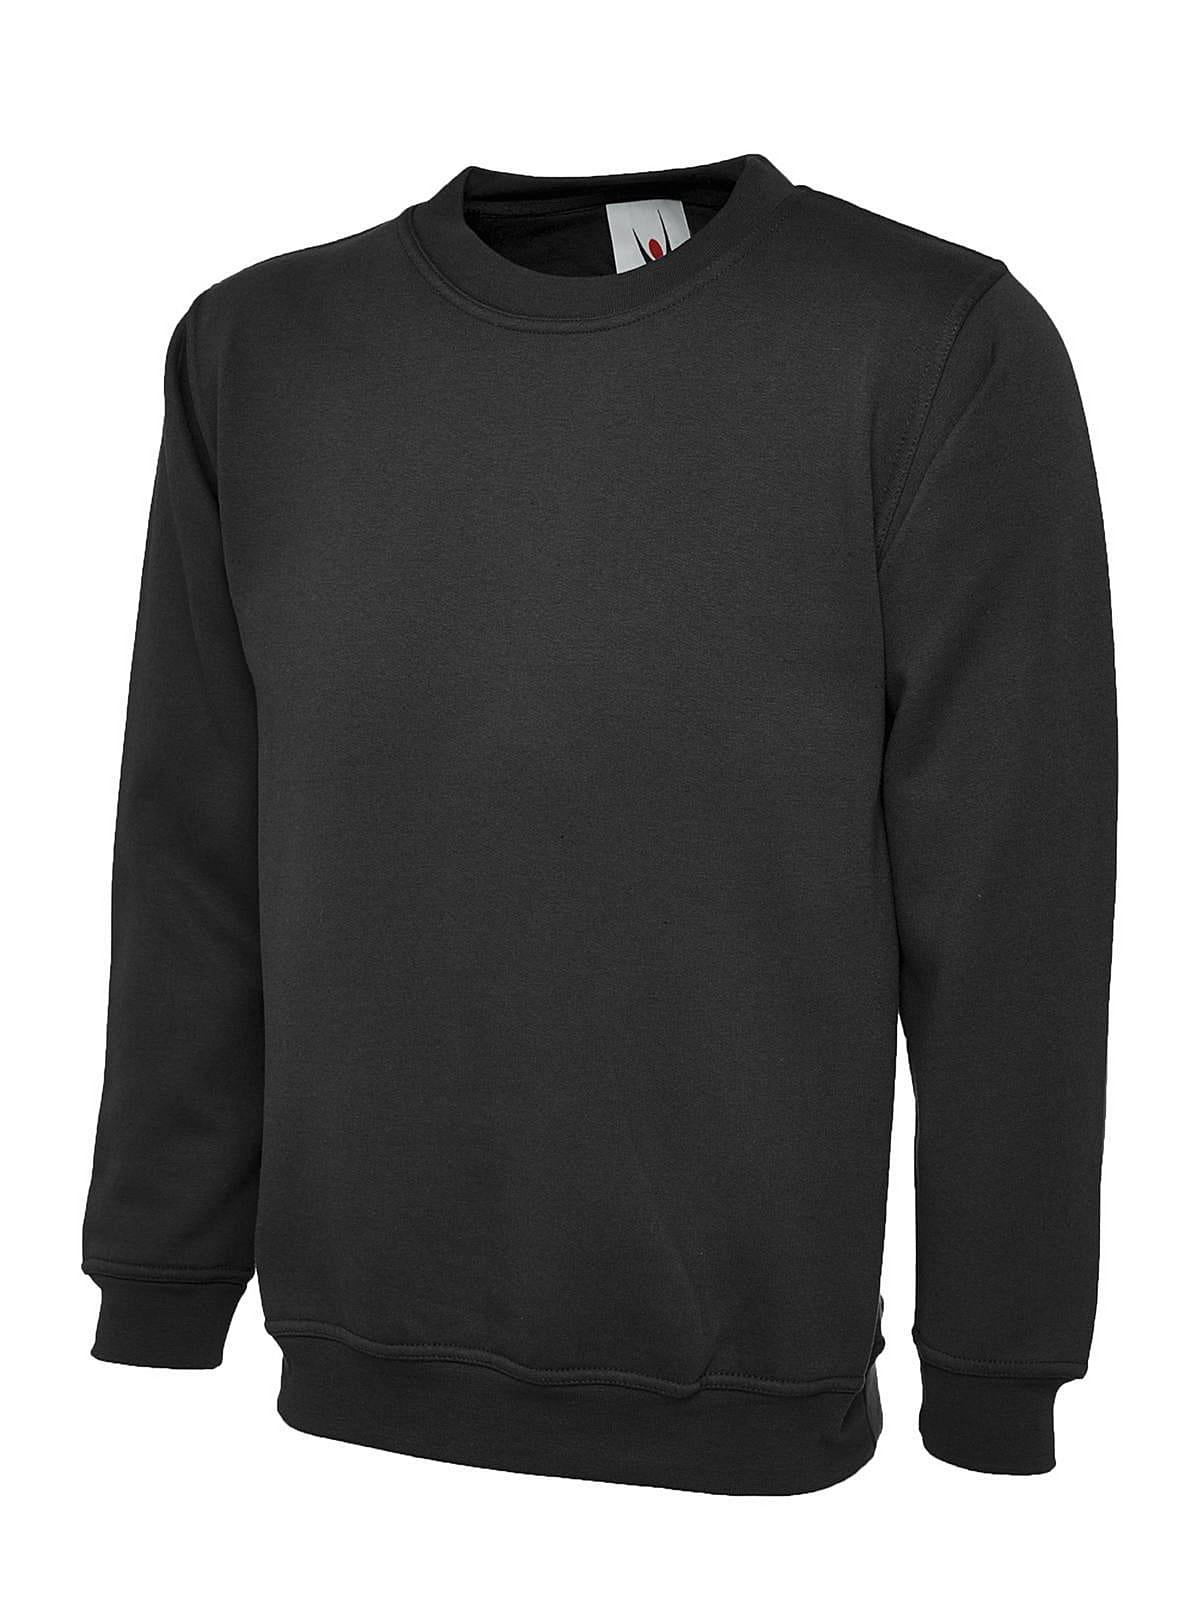 Uneek 300GSM Classic Sweatshirt in Black (Product Code: UC203)